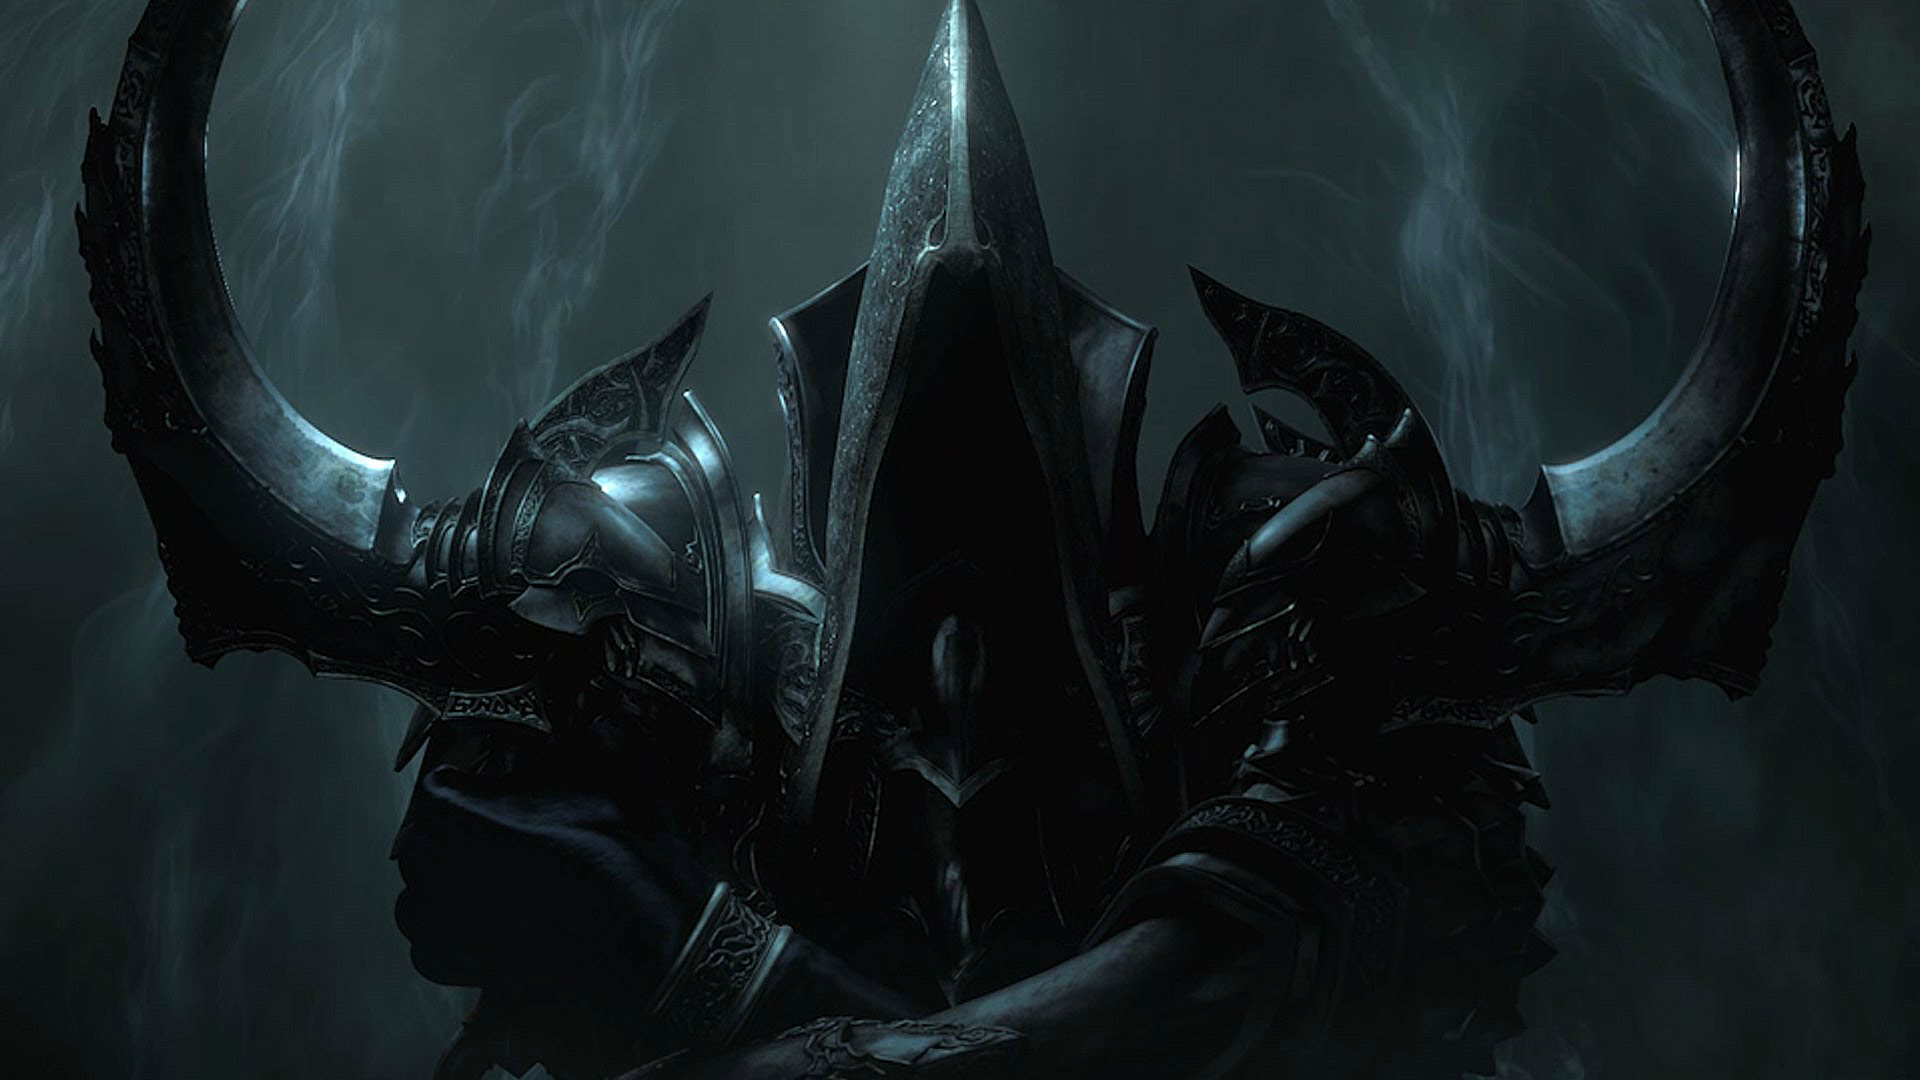 A shadowy figure in Diablo 3